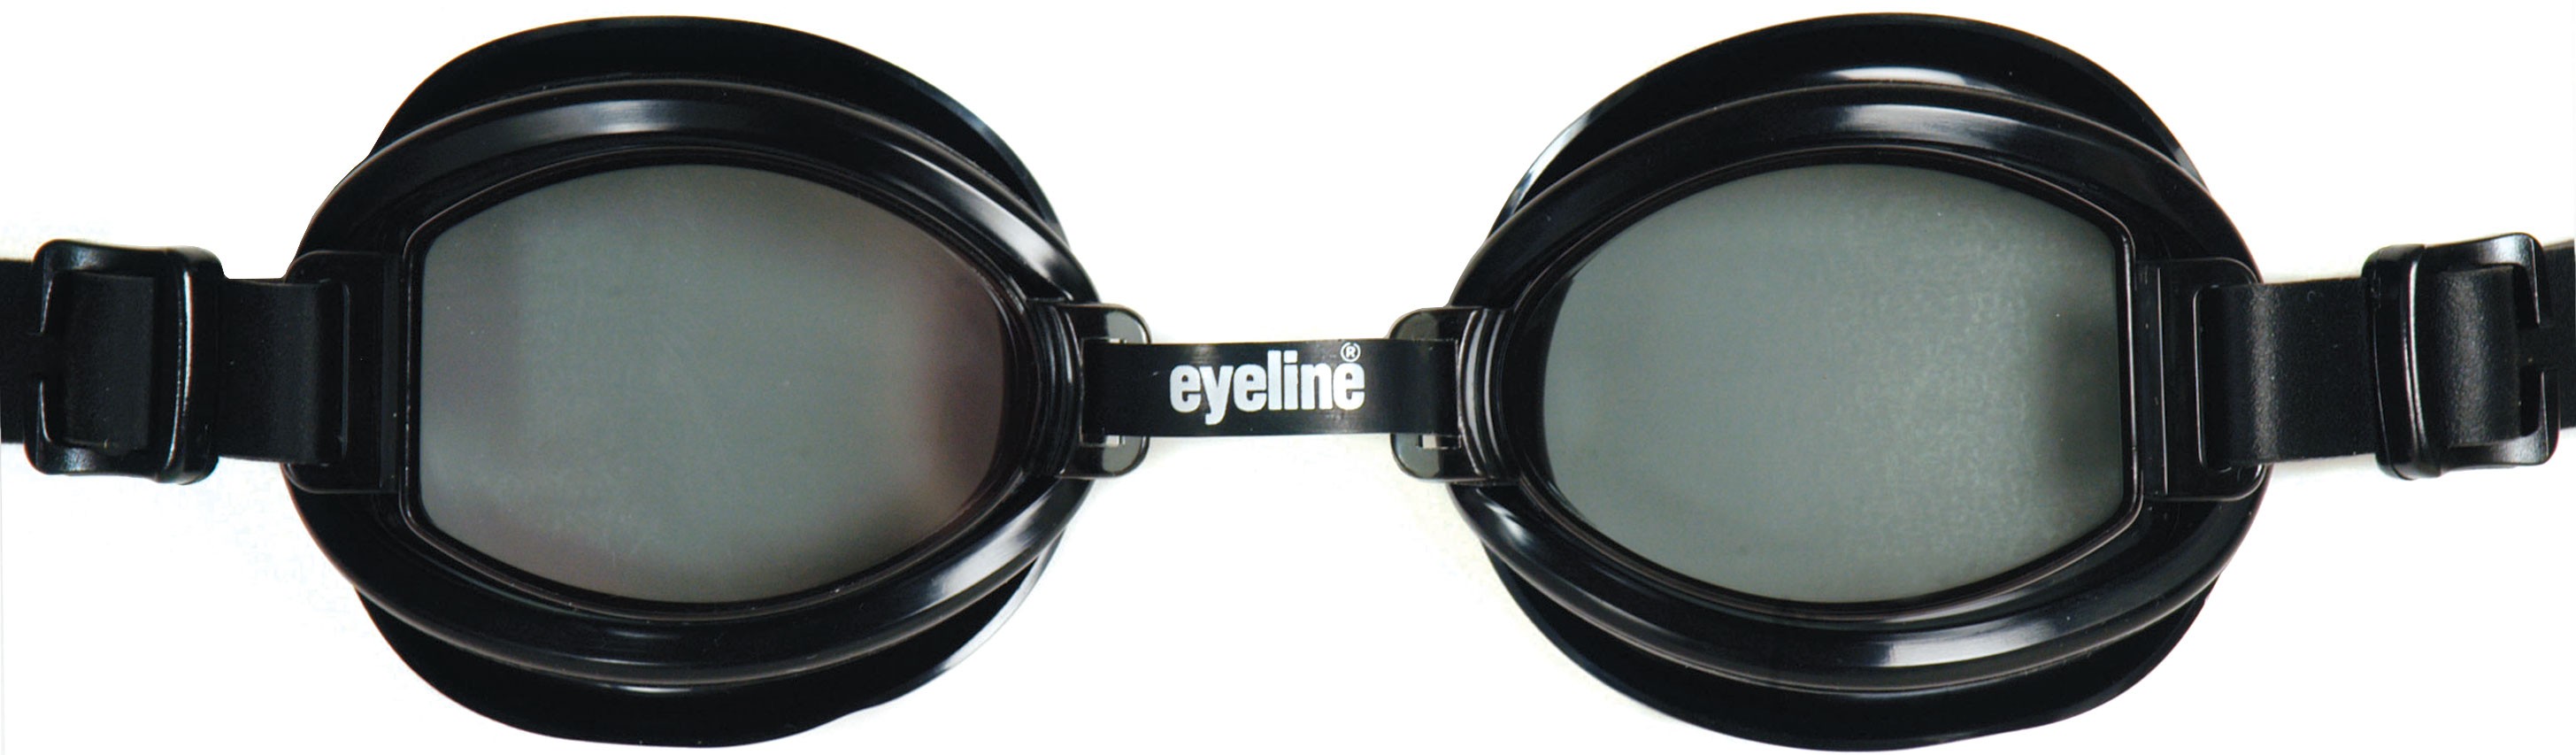 Eyeline Black Max Swimming Goggle anti-fog UV protection swimming EYBMS 